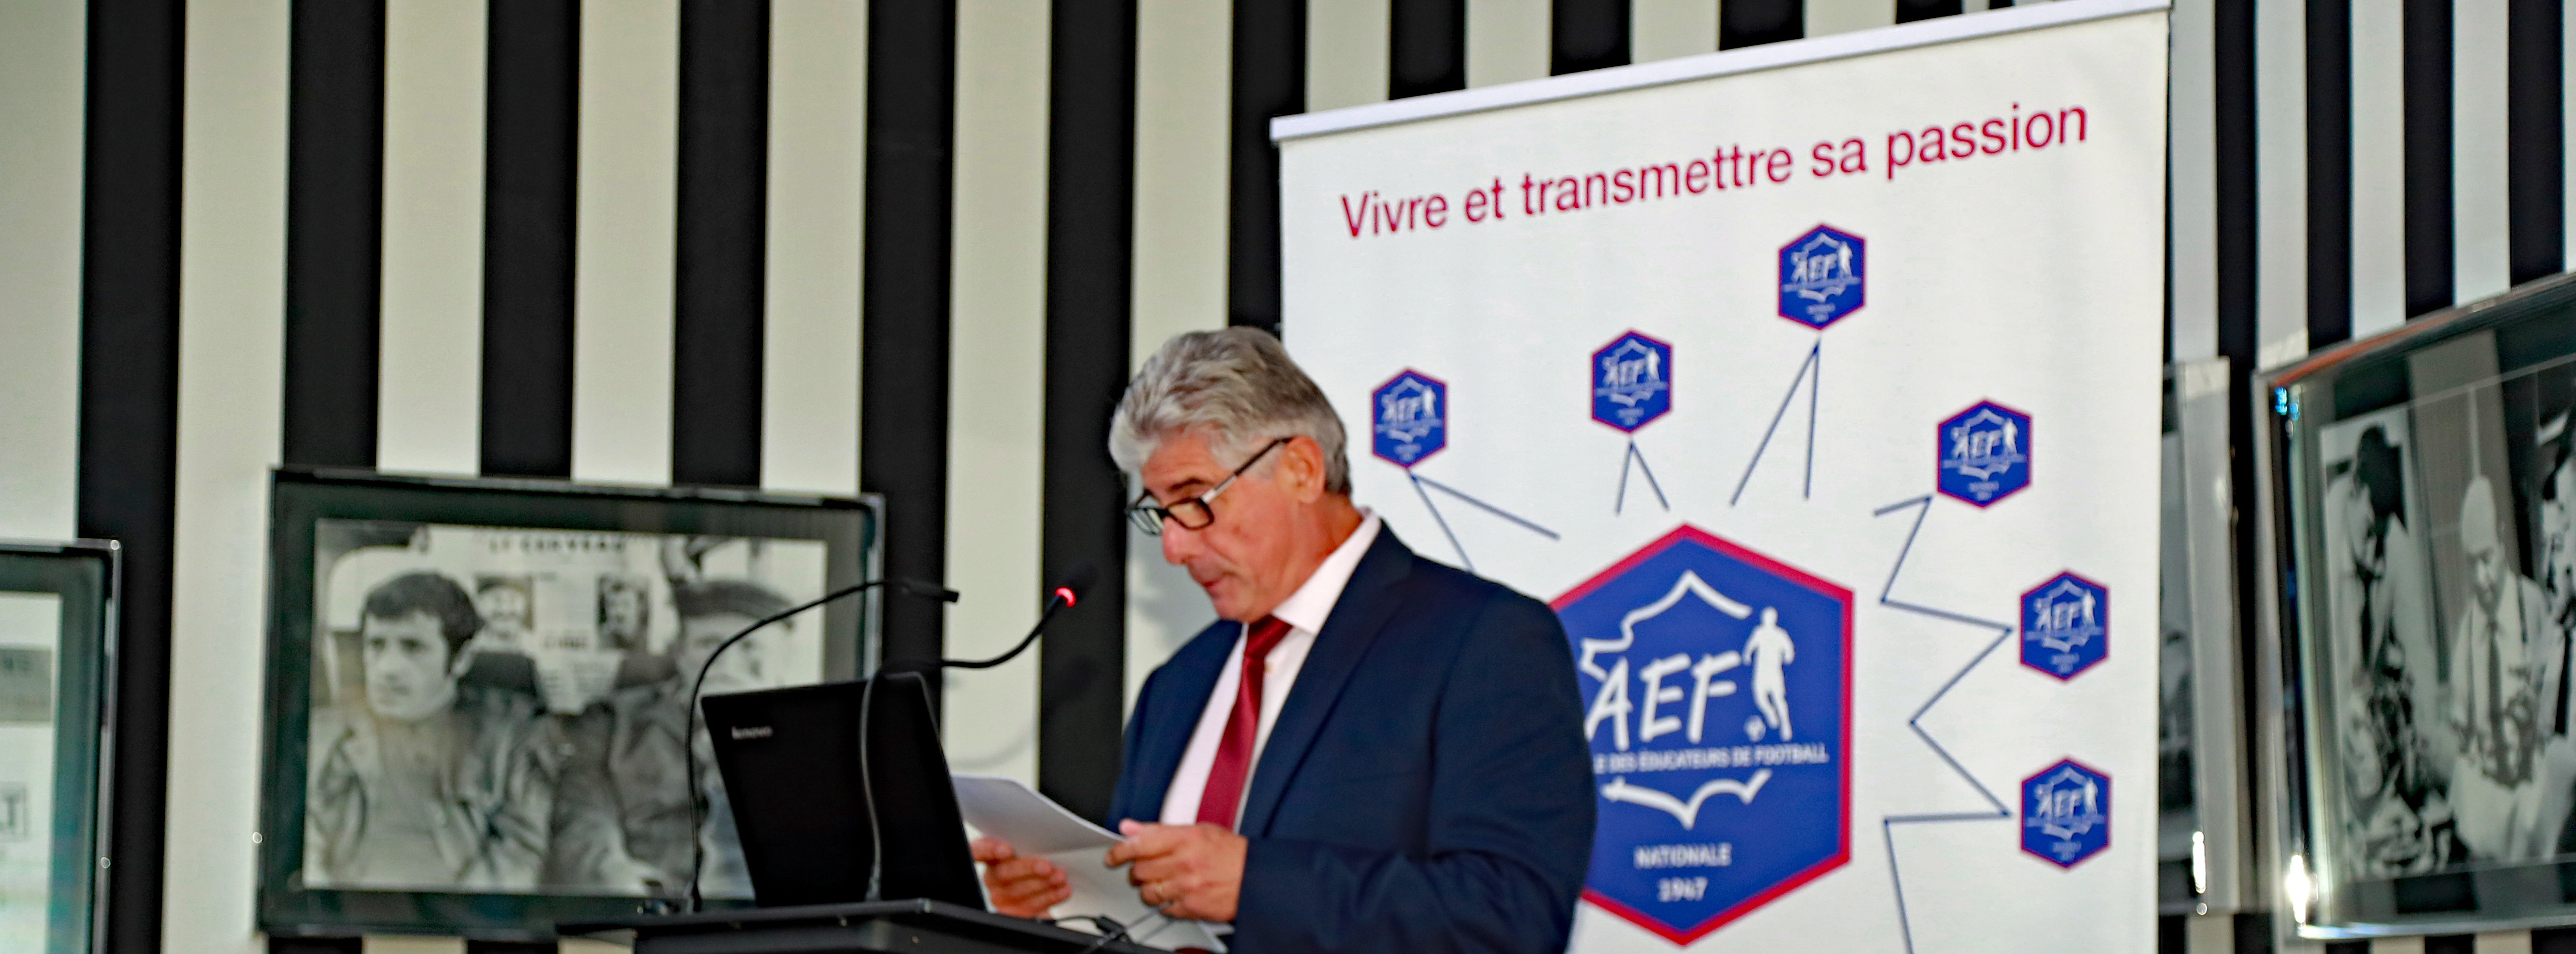 L'AEF organise ses Assemblées Générales le 21 octobre à Boisseuil près de Limoges - Illustration